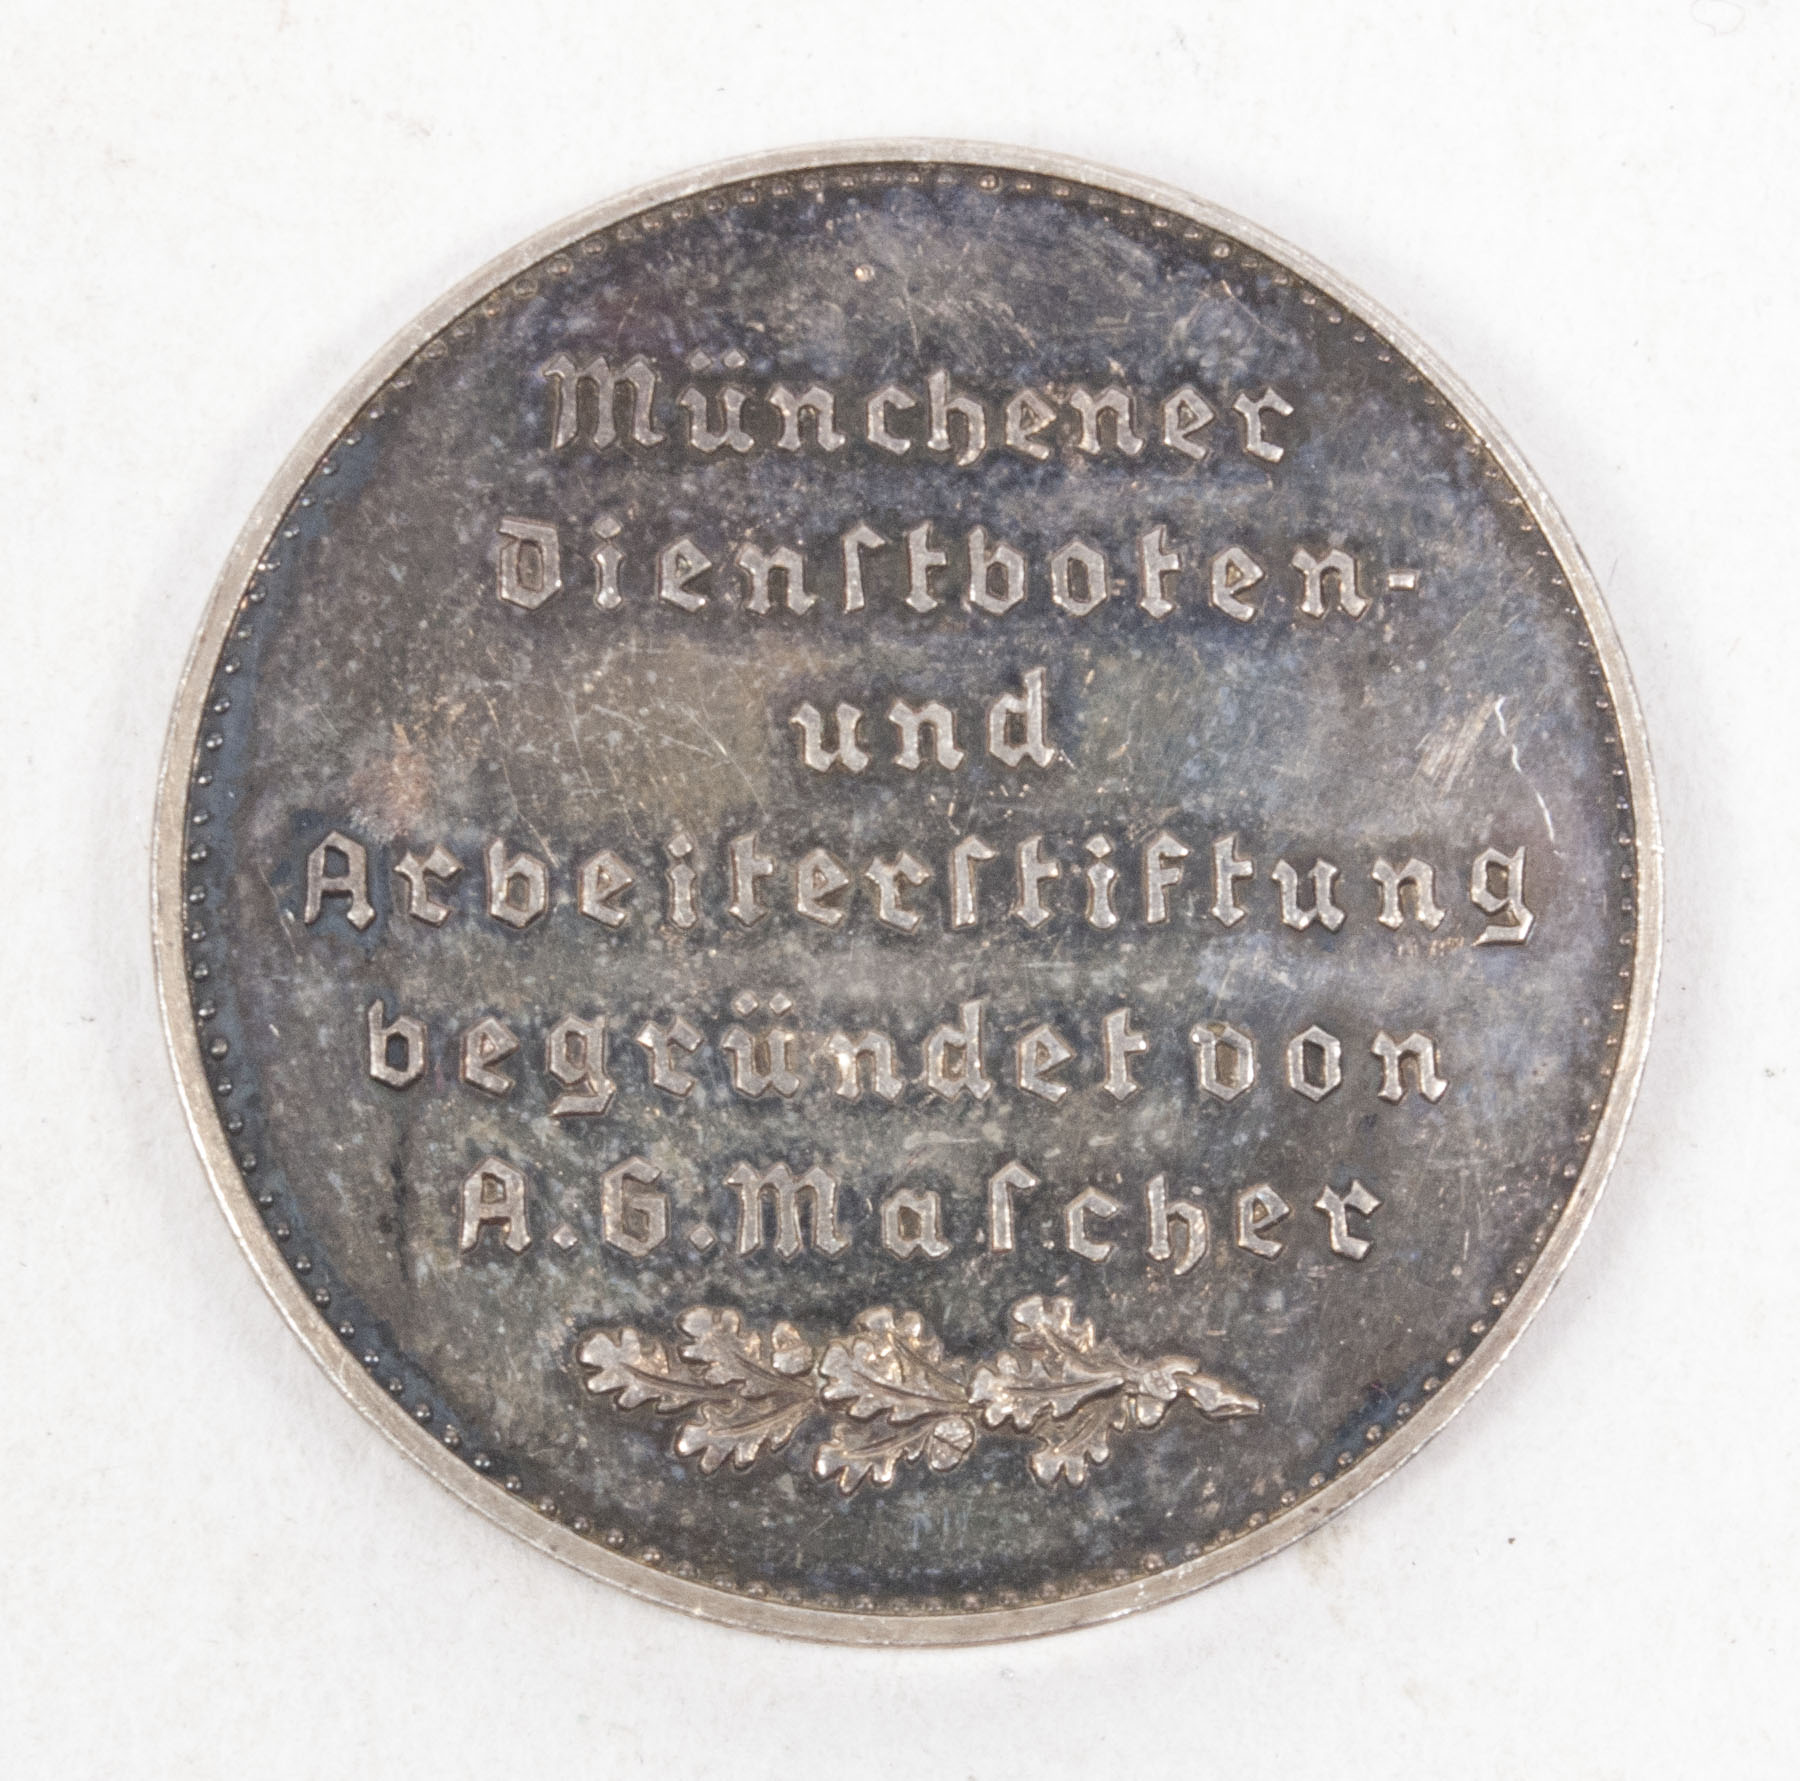 Hauptstadt der BEwegung München - Münchener Dienstboten und Arbeiterstiftung begründet von A.G. Mascher plaque